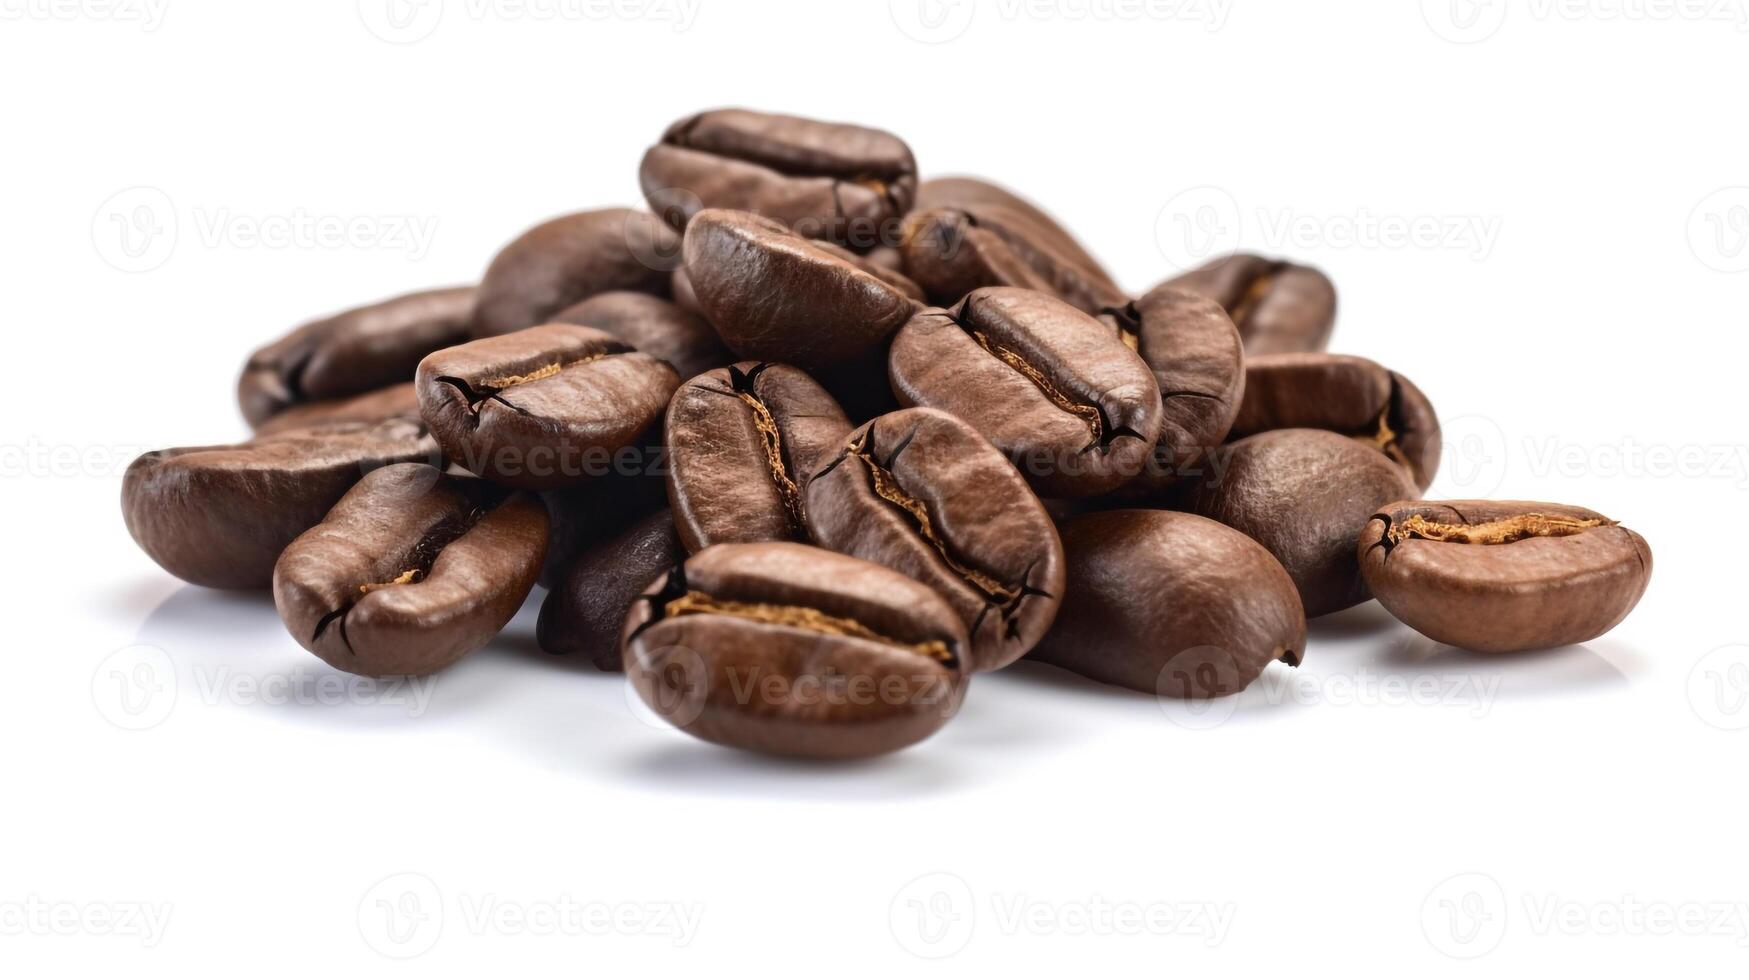 coffee bean on white background. photo